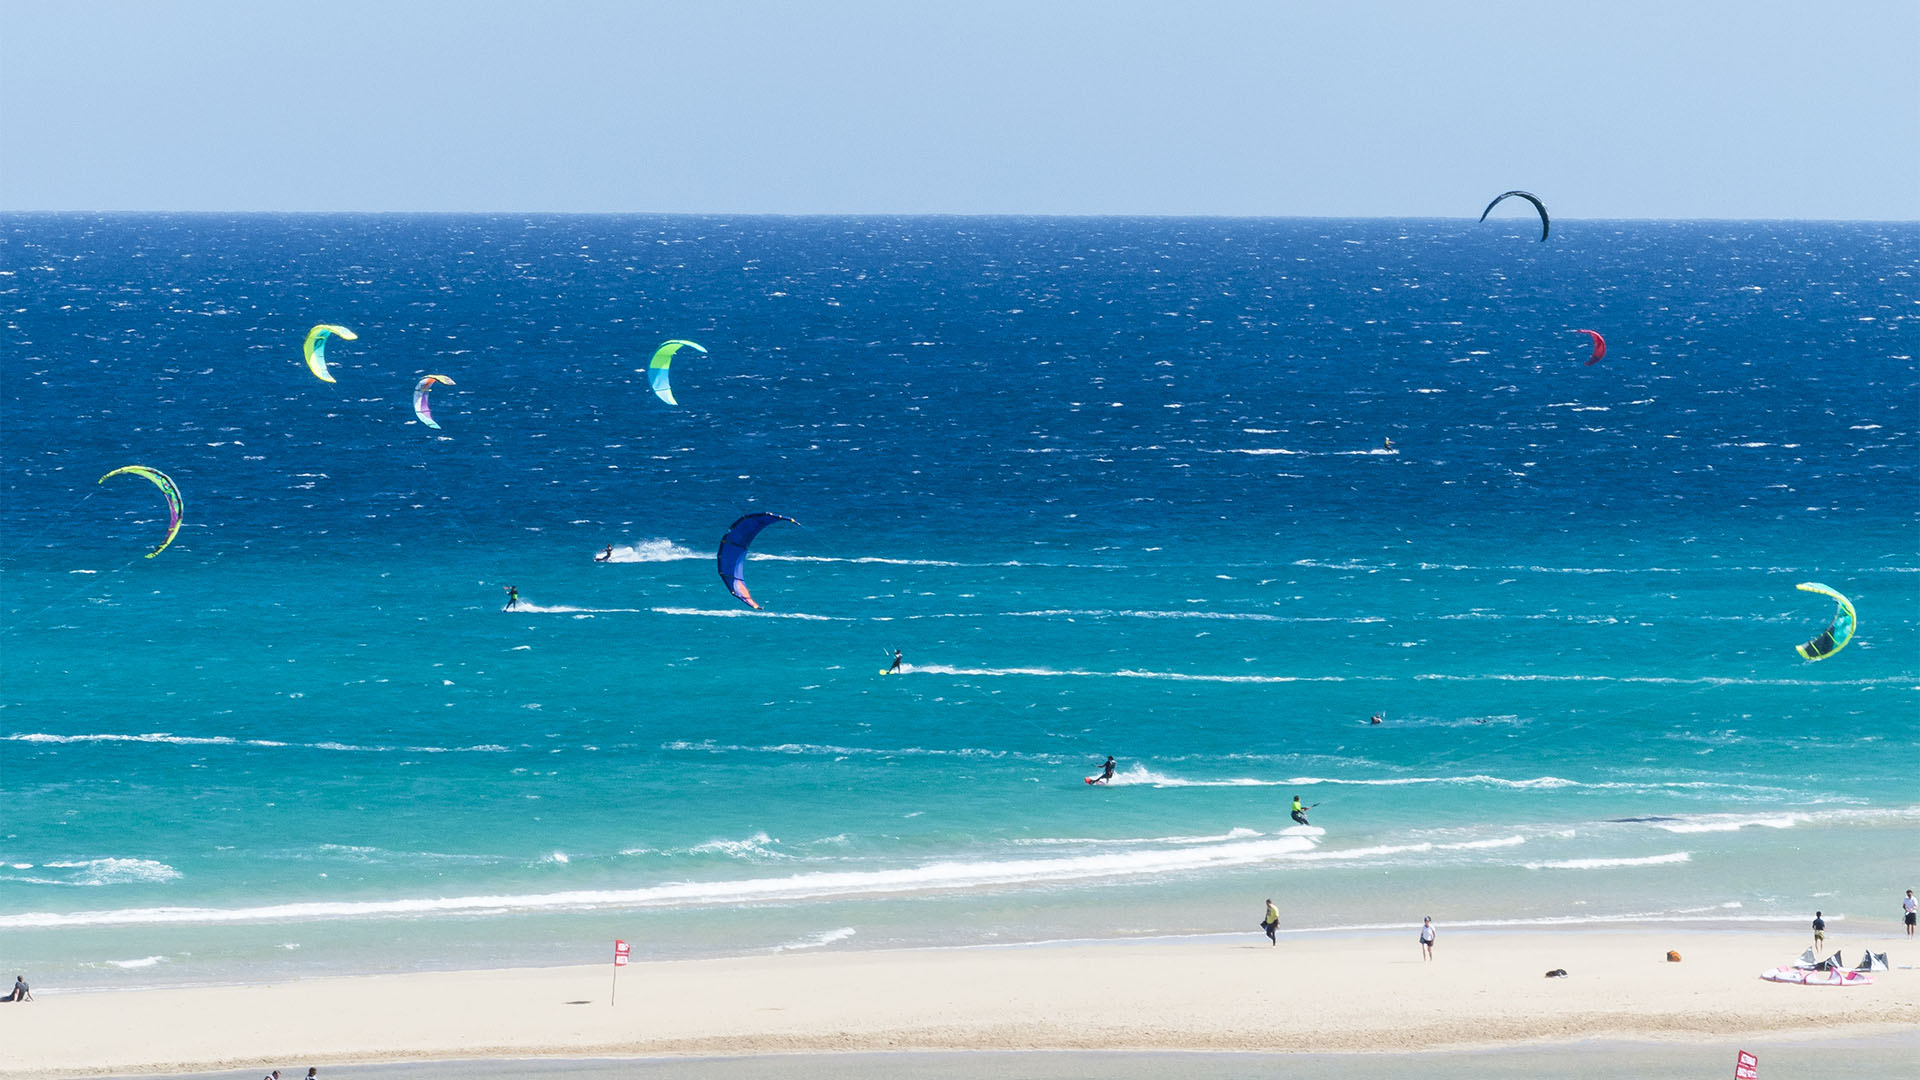 Der Himmel hängt voller Kites in Sotavento Fuerteventura – trotzdem viel, viel Platz für jeden am Wasser.